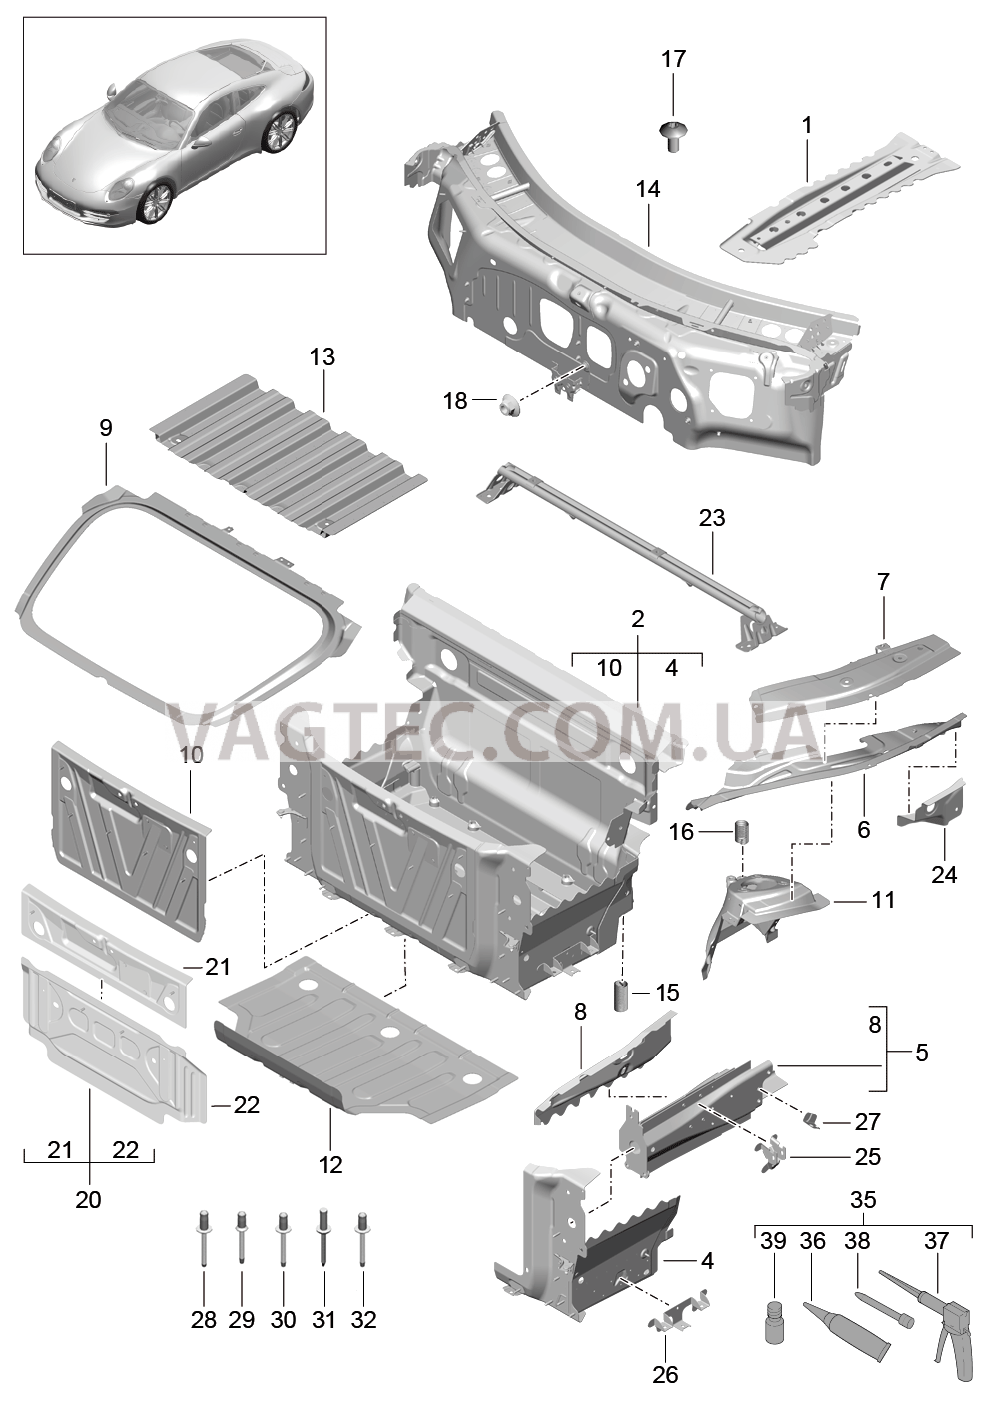 801-010 Передняя часть кузова, Отдельные детали для PORSCHE 911.Carrera 2012-2016USA